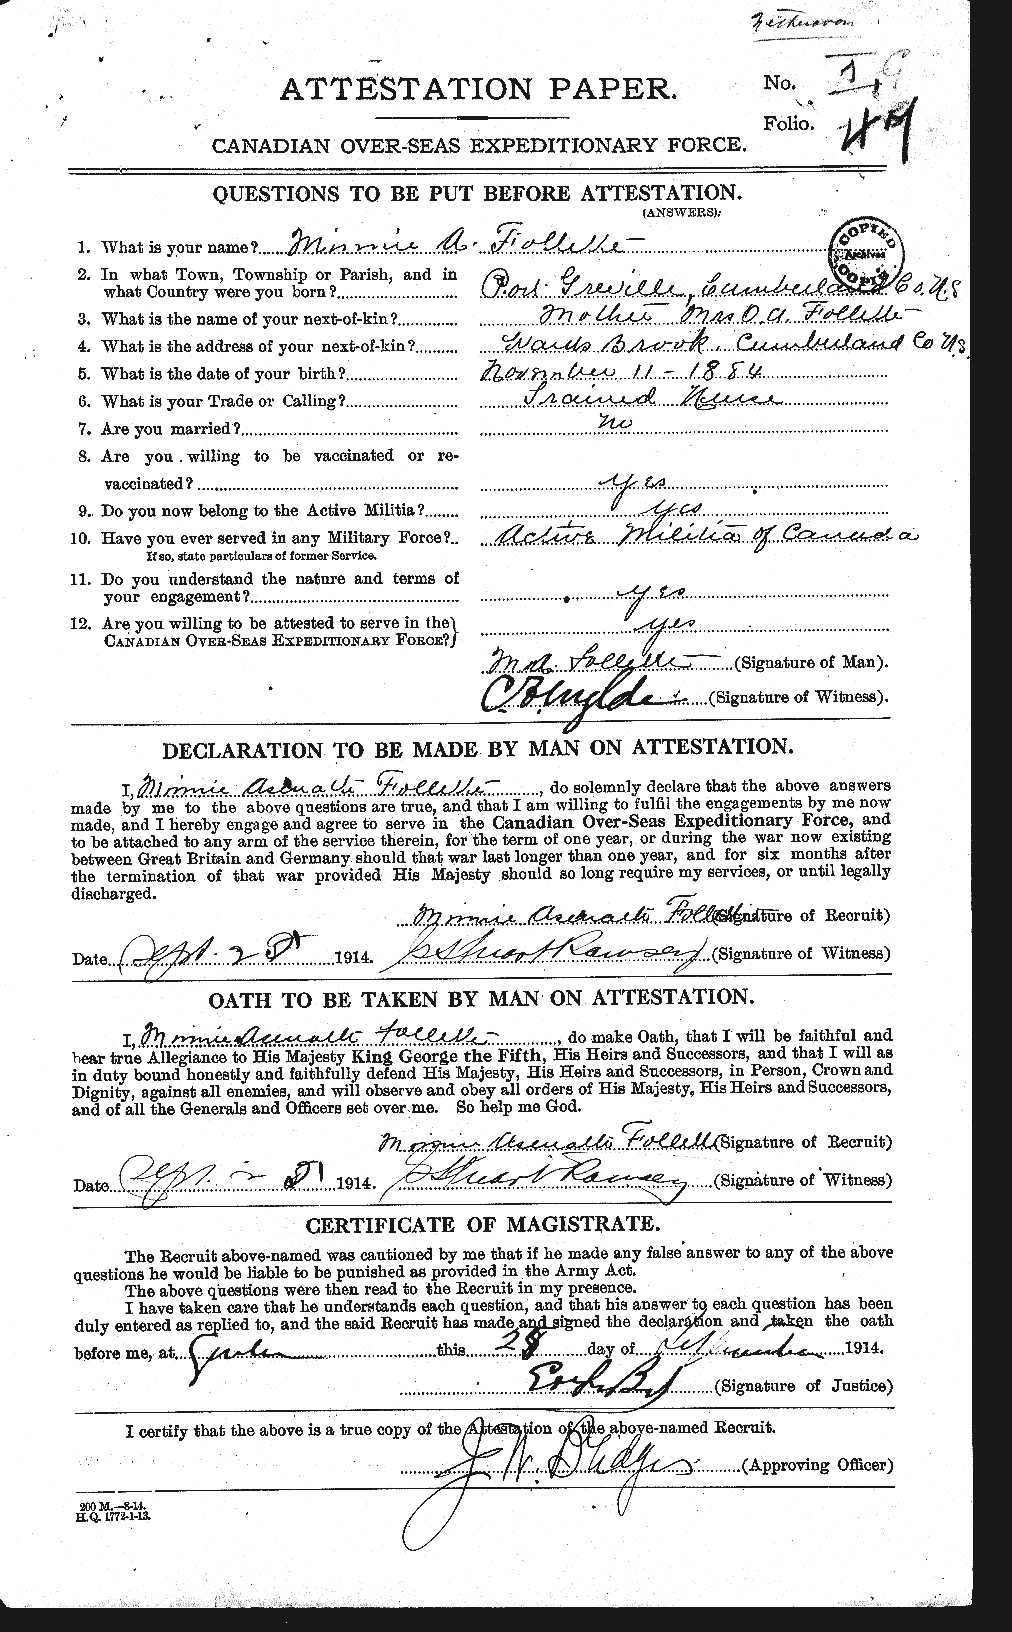 Dossiers du Personnel de la Première Guerre mondiale - CEC 237289a